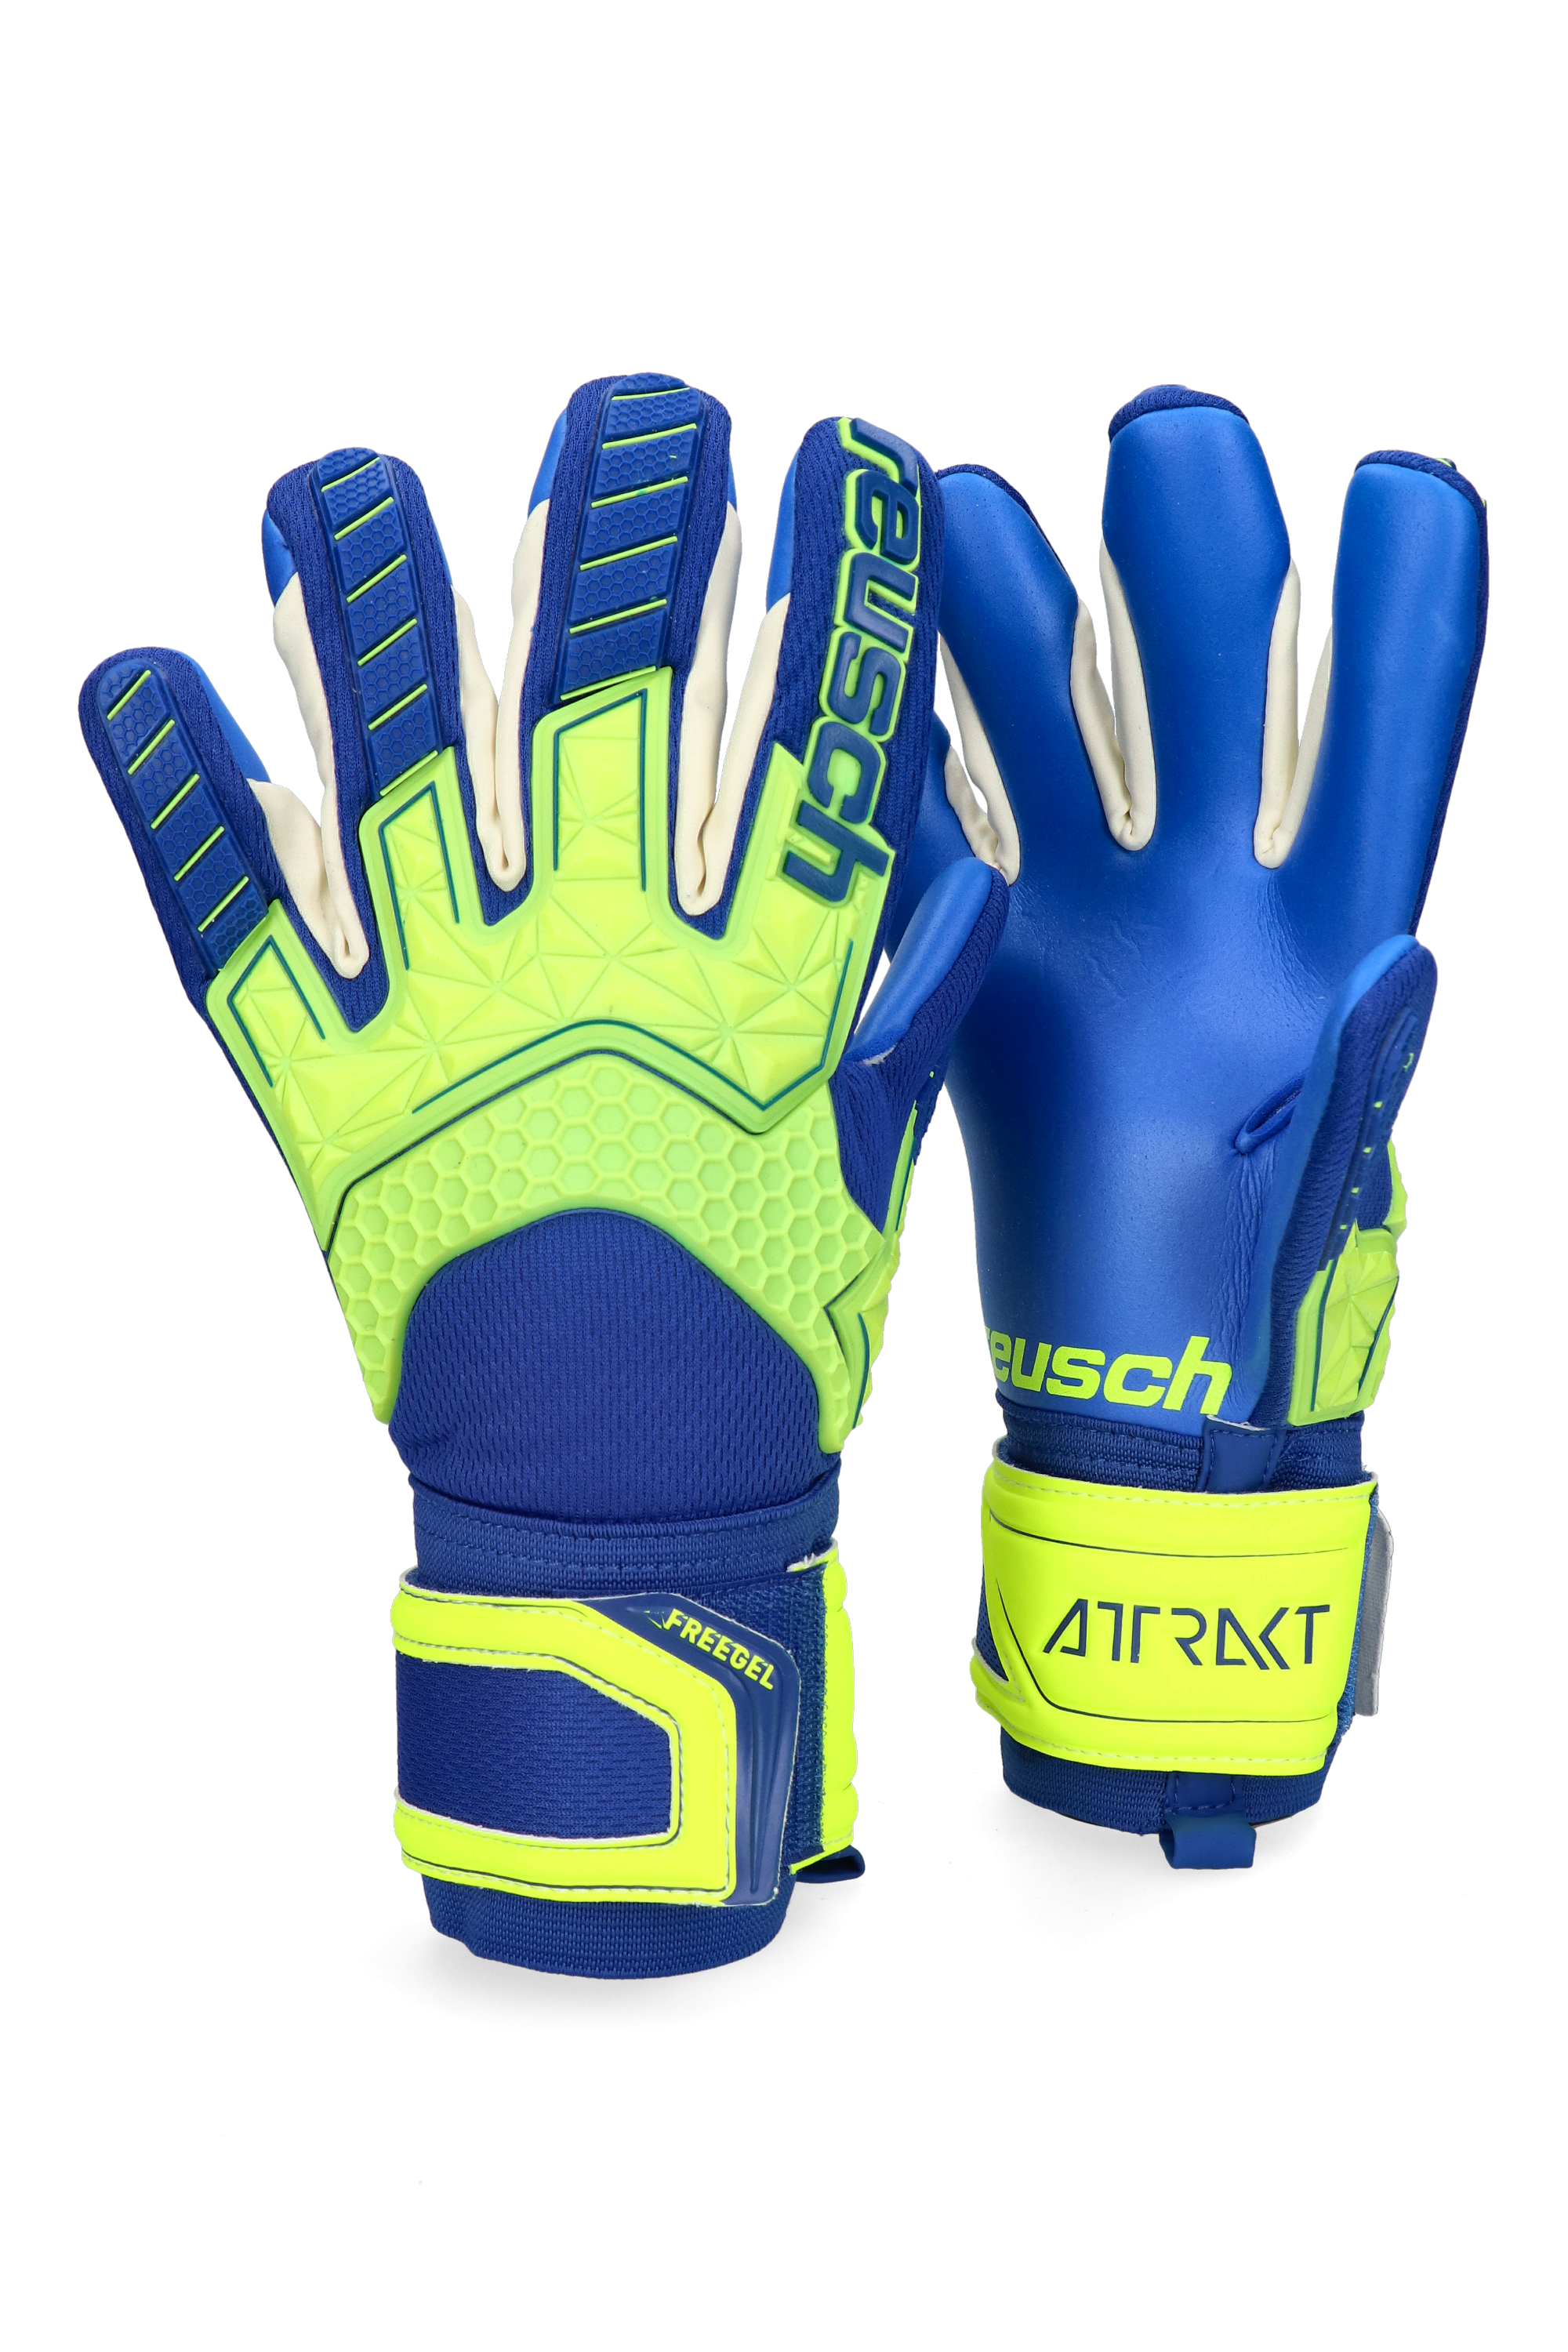 Reusch Attrakt Freegel S1  Goalkeeper Gloves Size 